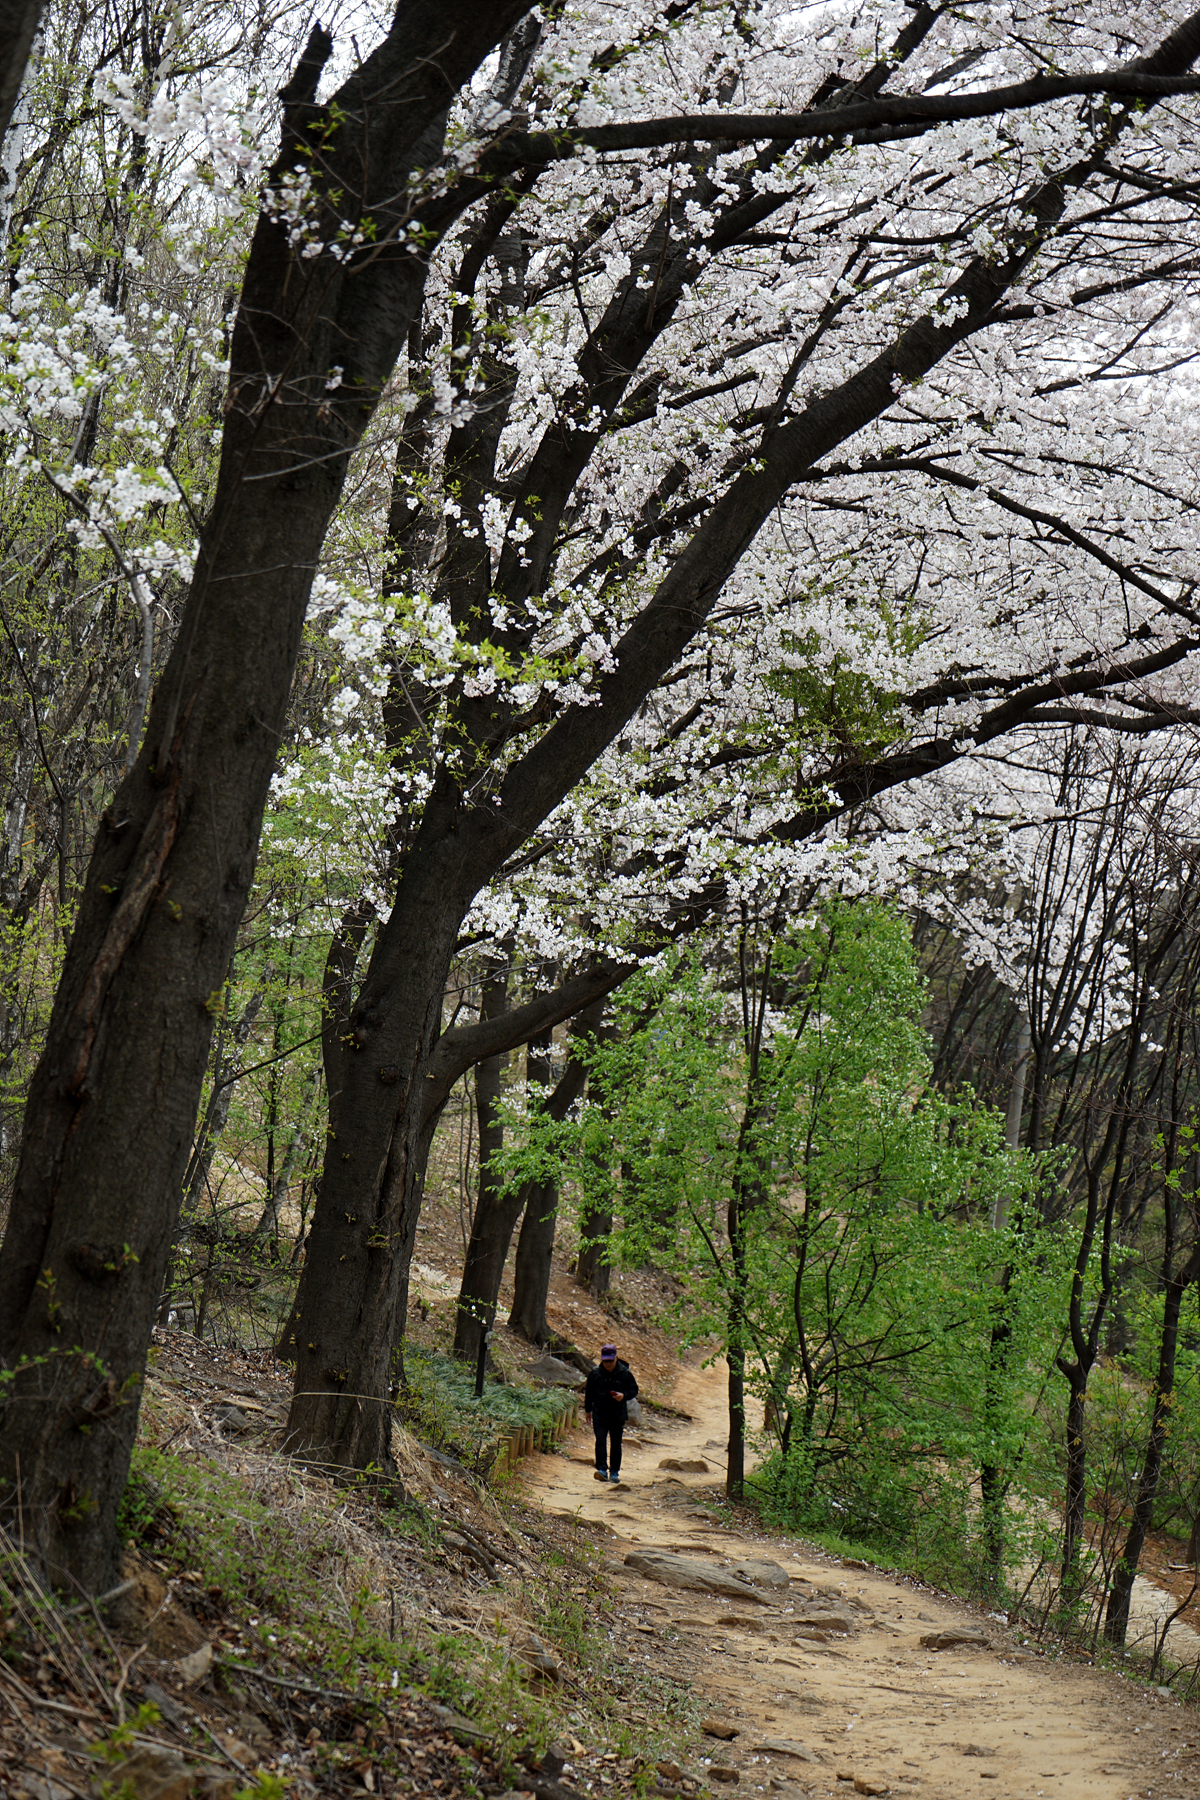  오래된 벚나무가 장관인 벚꽃길